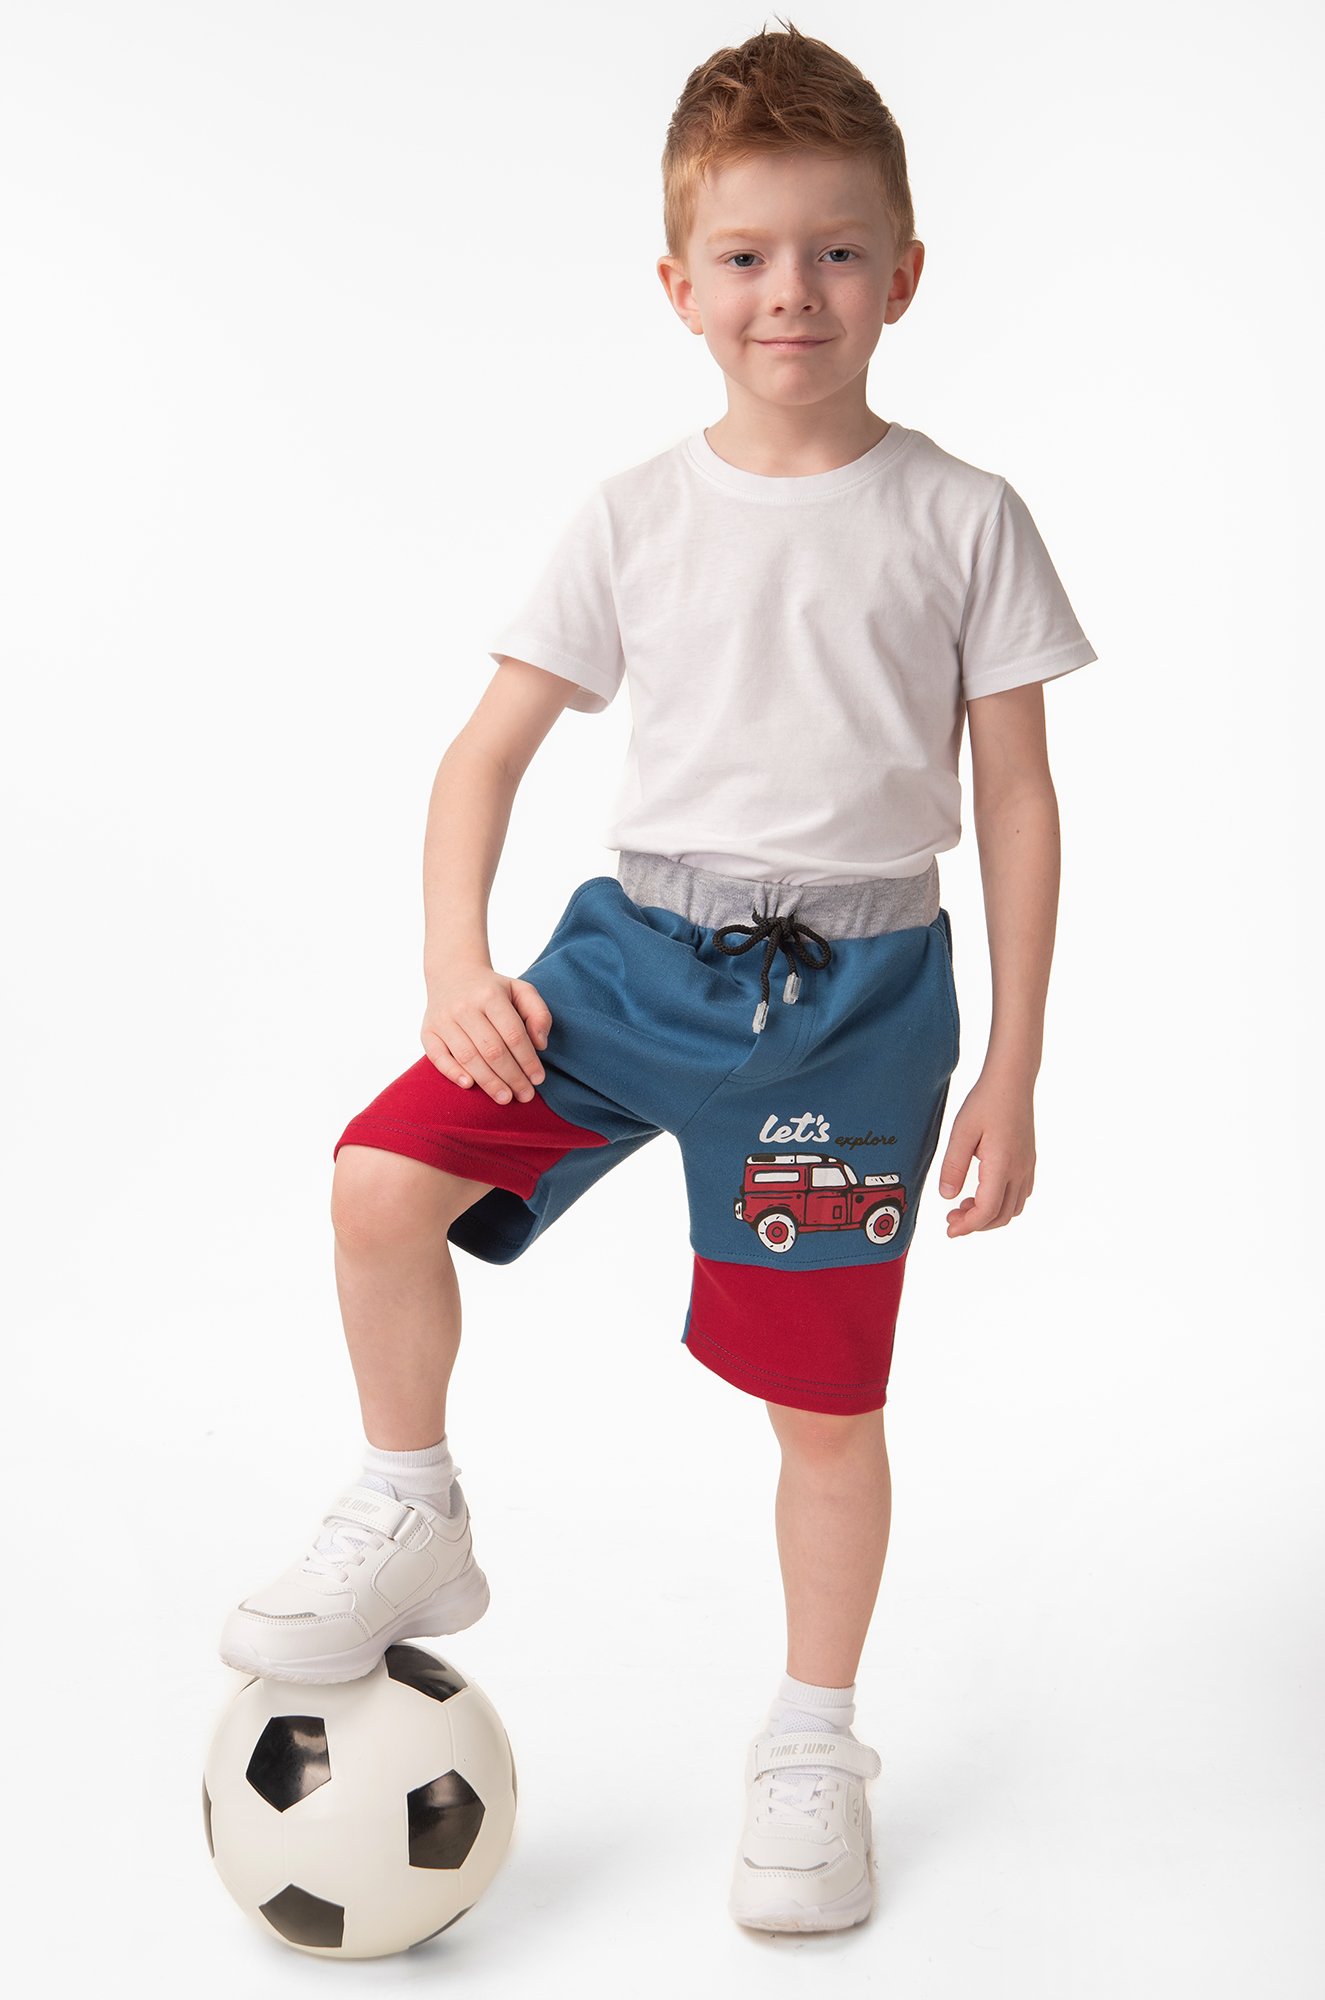 Хлопковые шорты из интерлока для мальчика Bonito